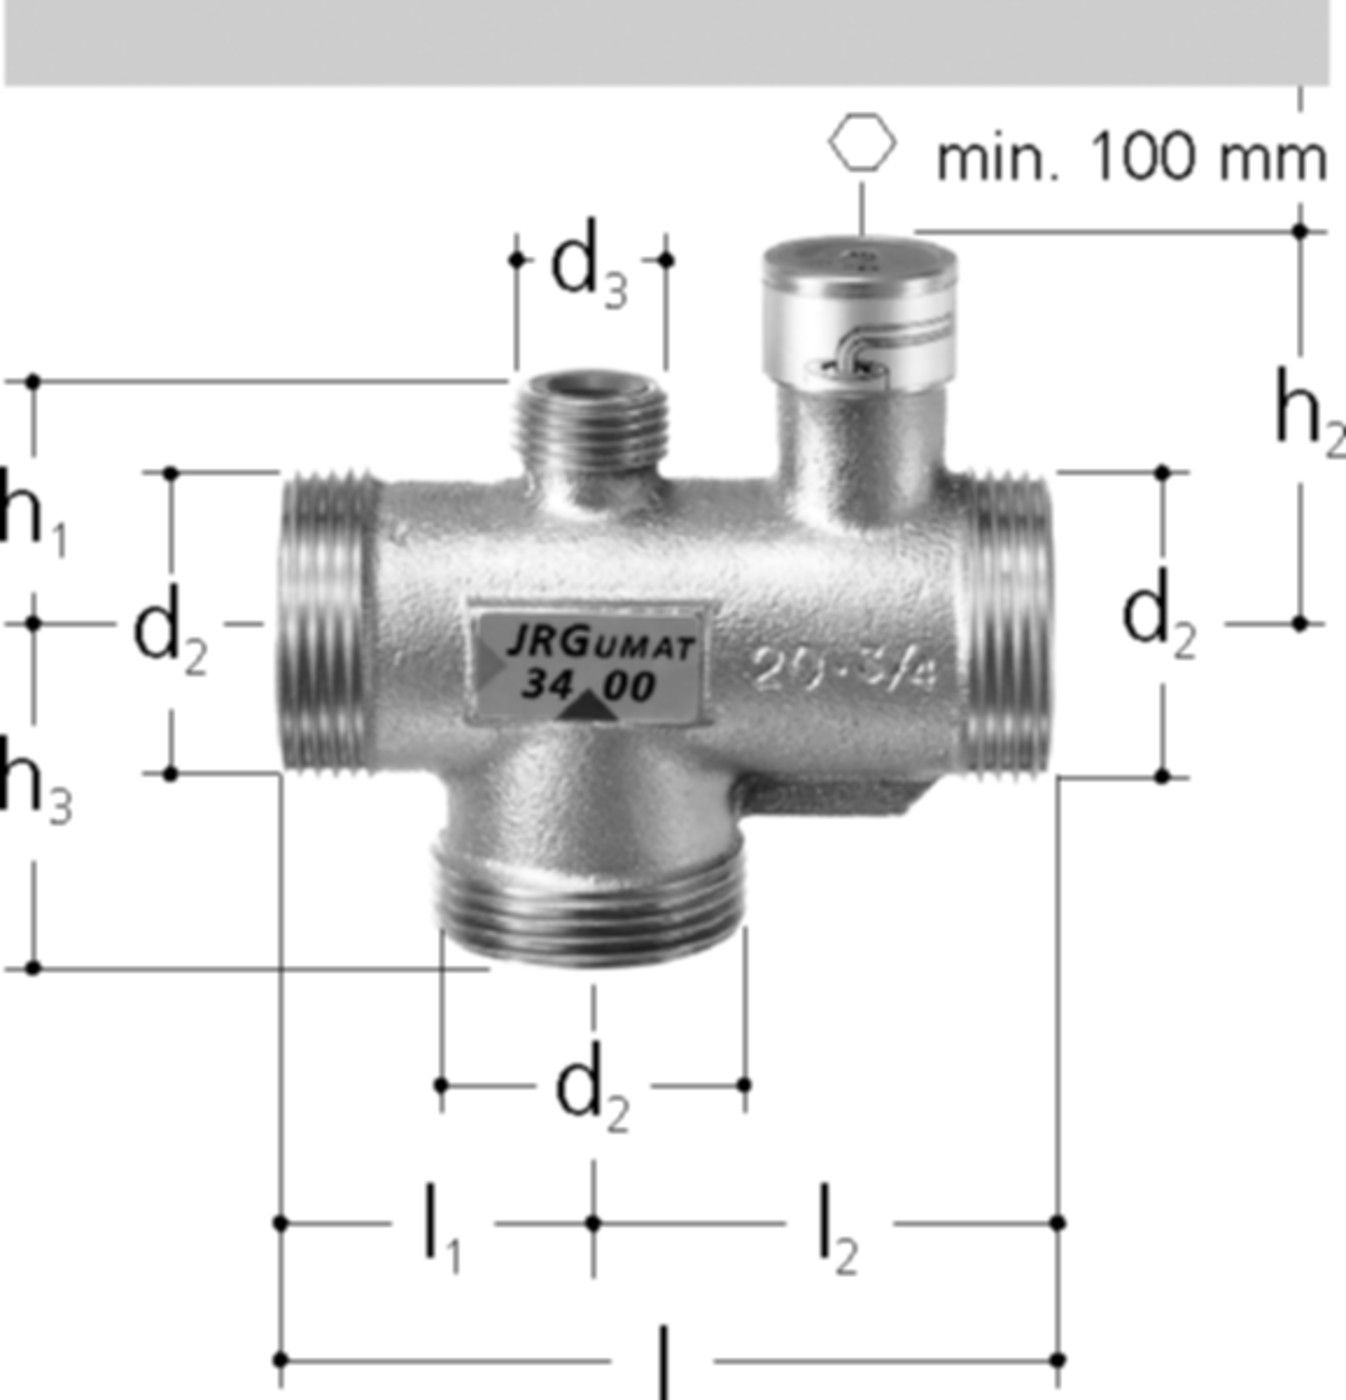 JRGUMAT Thermomischer PN 10 1" DN 25 55°C 3400.936 - JRG Armaturen